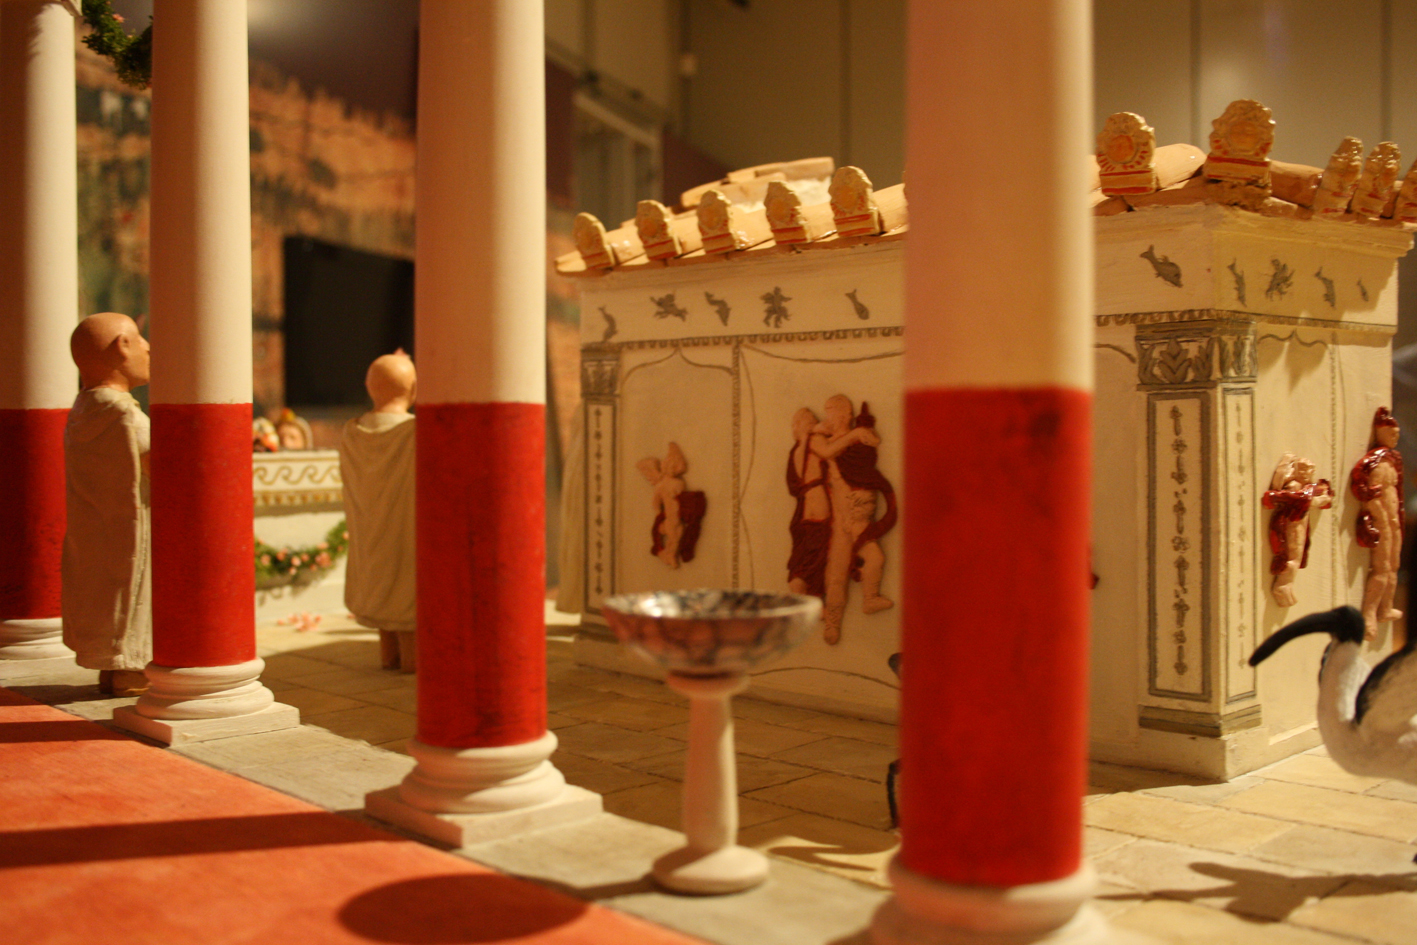 Plastico illustrativo del luogo di culto dedicato a Iside nel centro storico di Lecce